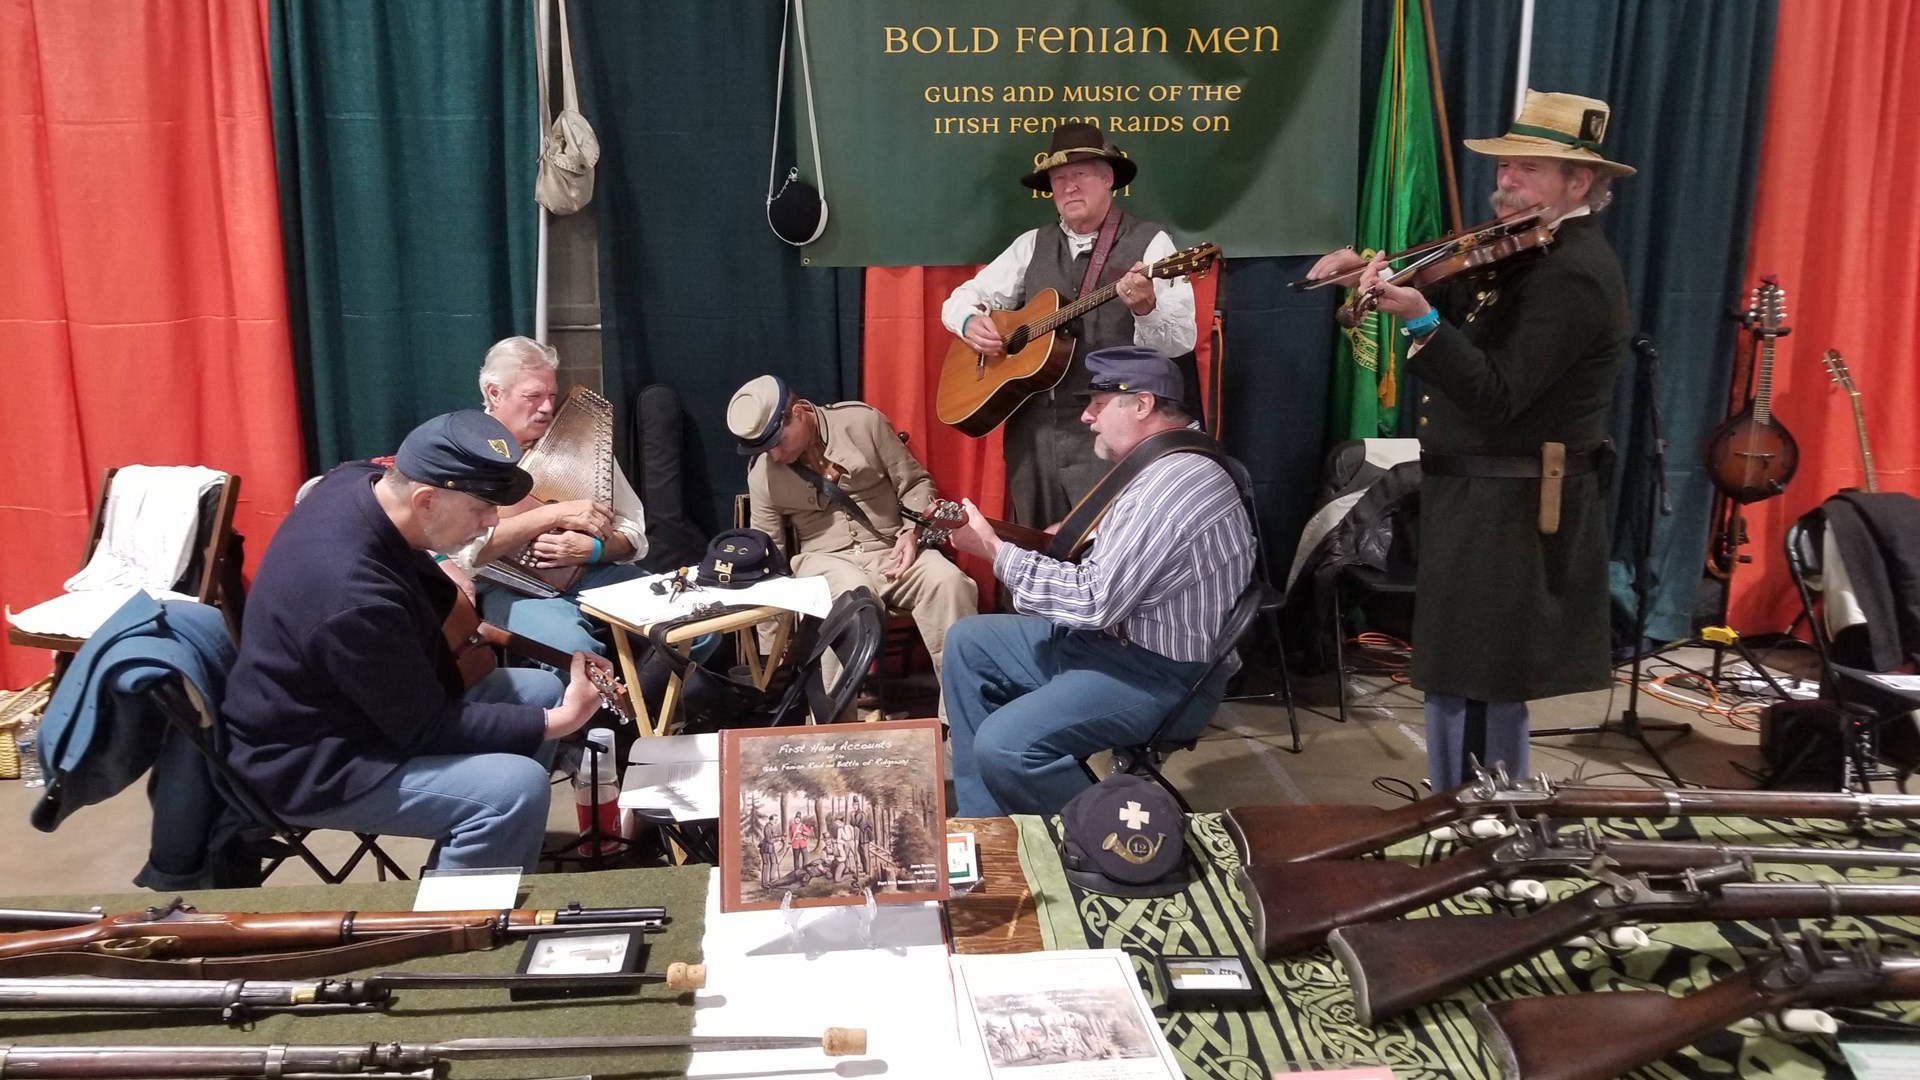 Men in vintage garb instruments band guns exhibit baltimore fenian irish